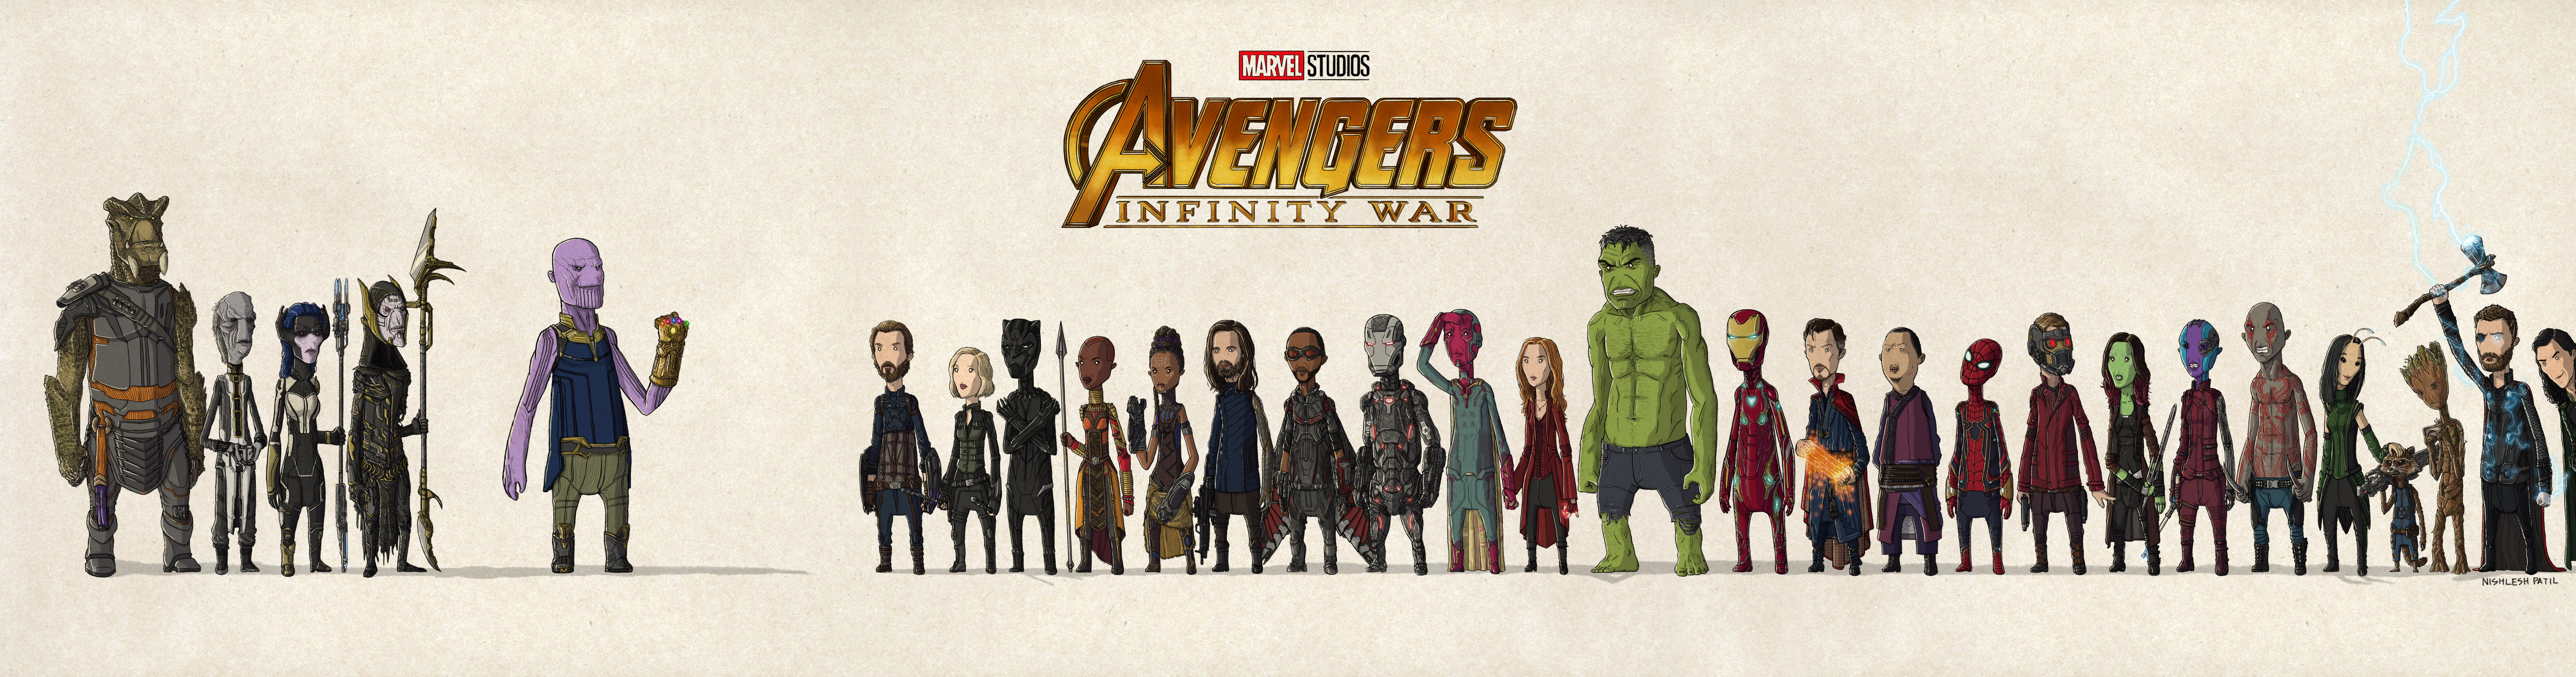 Avengers: Infinity War Art by Nishlesh Patil